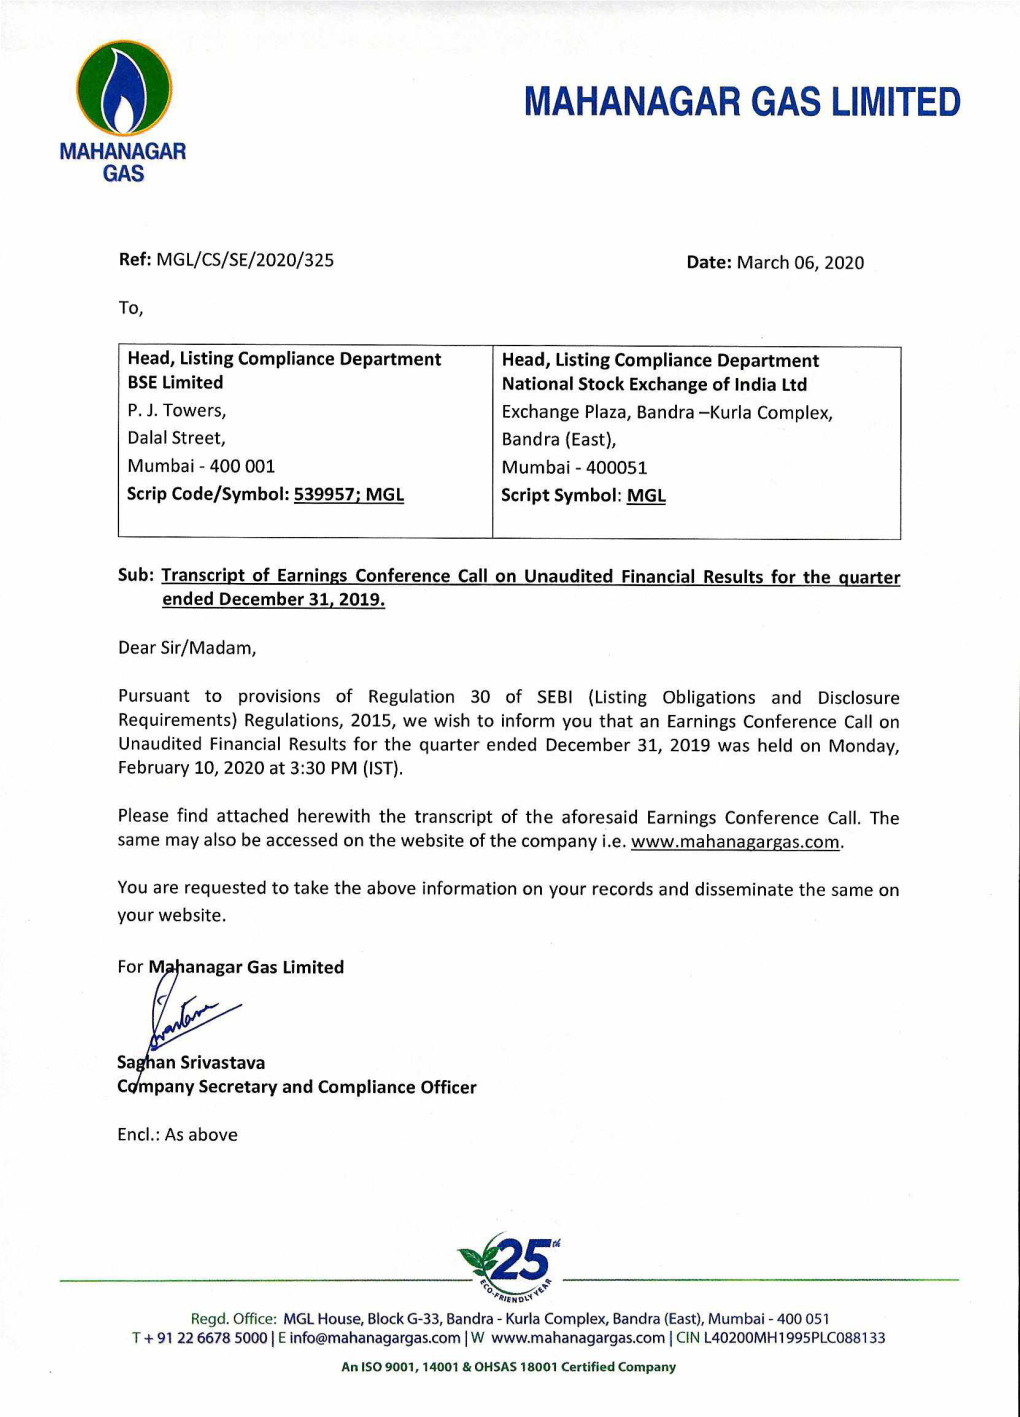 Mahanagar Gas Limited Q3 FY20 Earnings Call Transcriptdownload